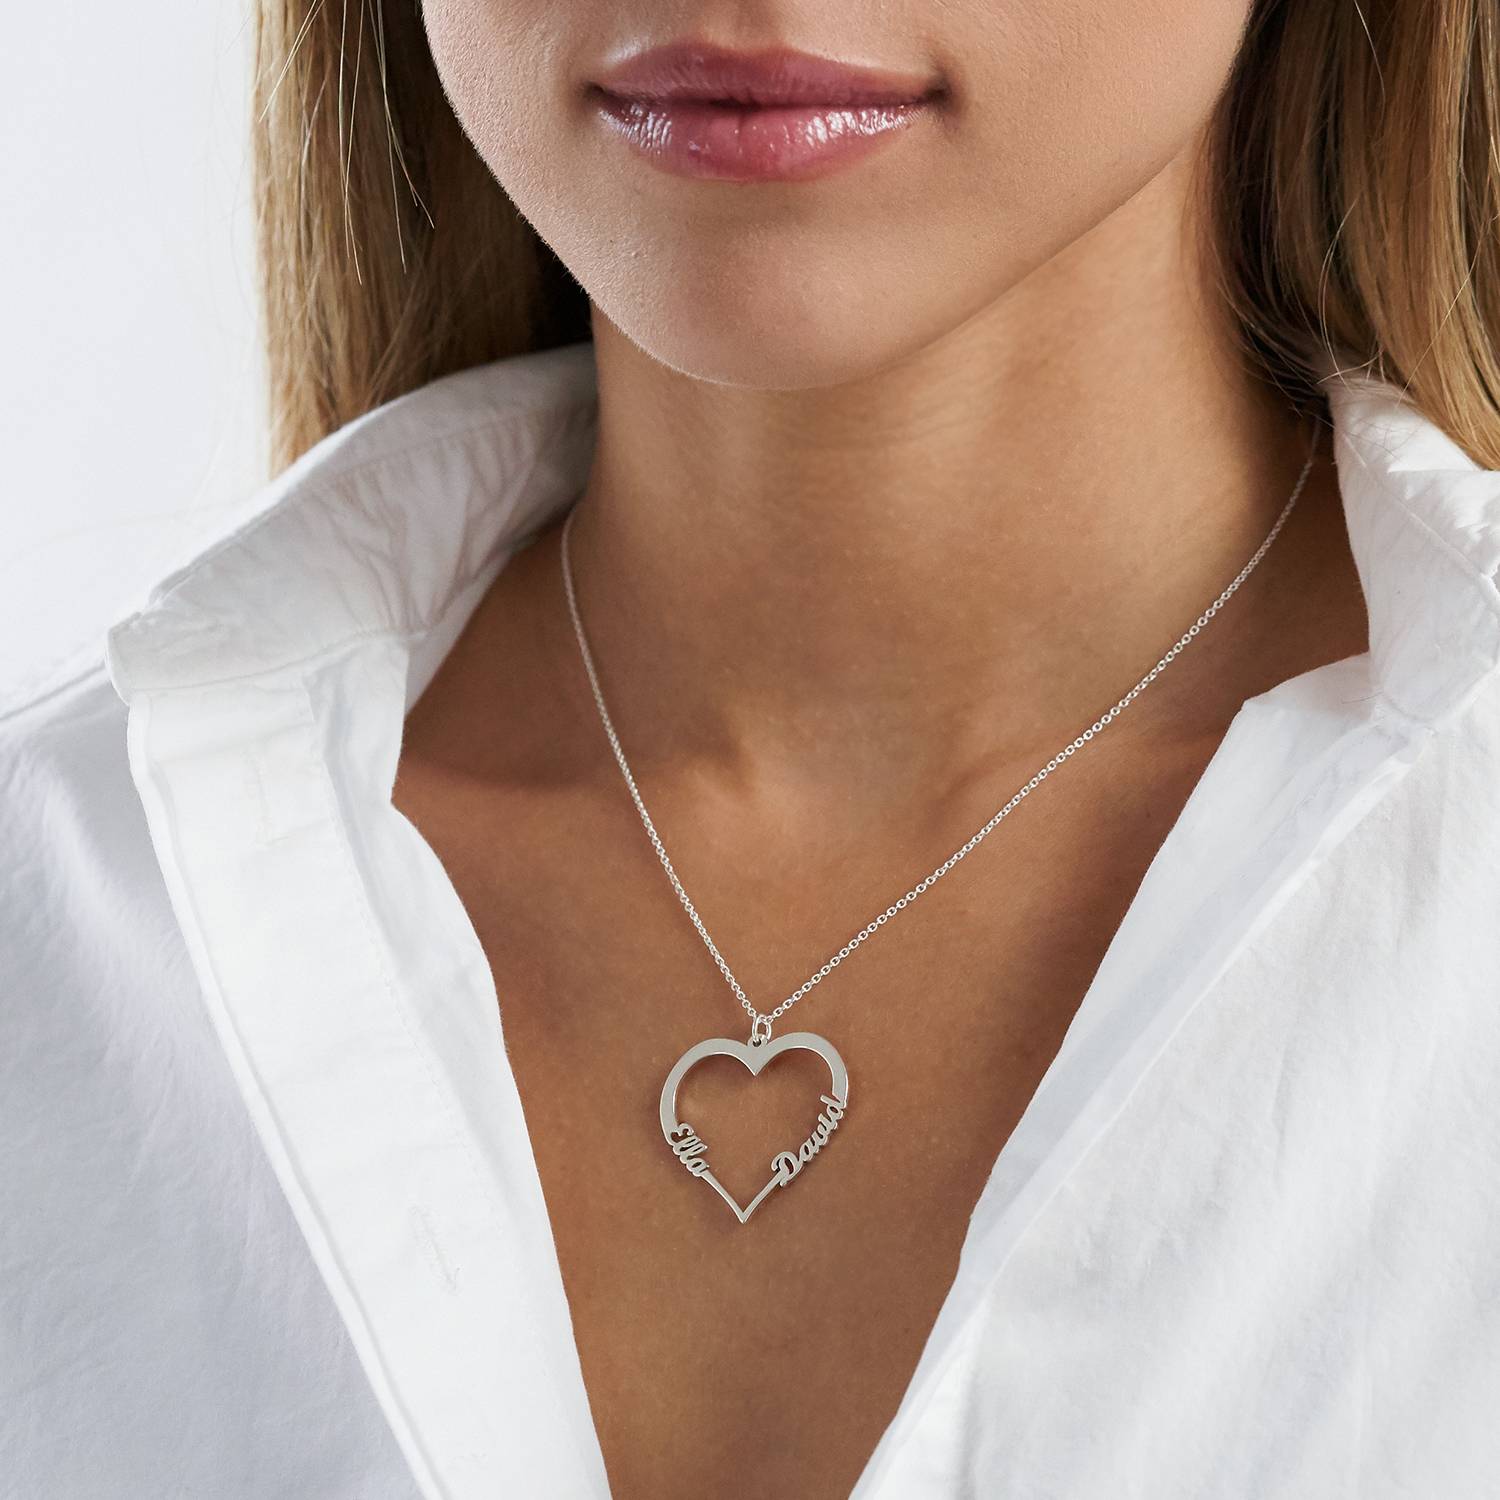 Herzförmige Halskette mit zwei Namen - Premium Silber-1 Produktfoto